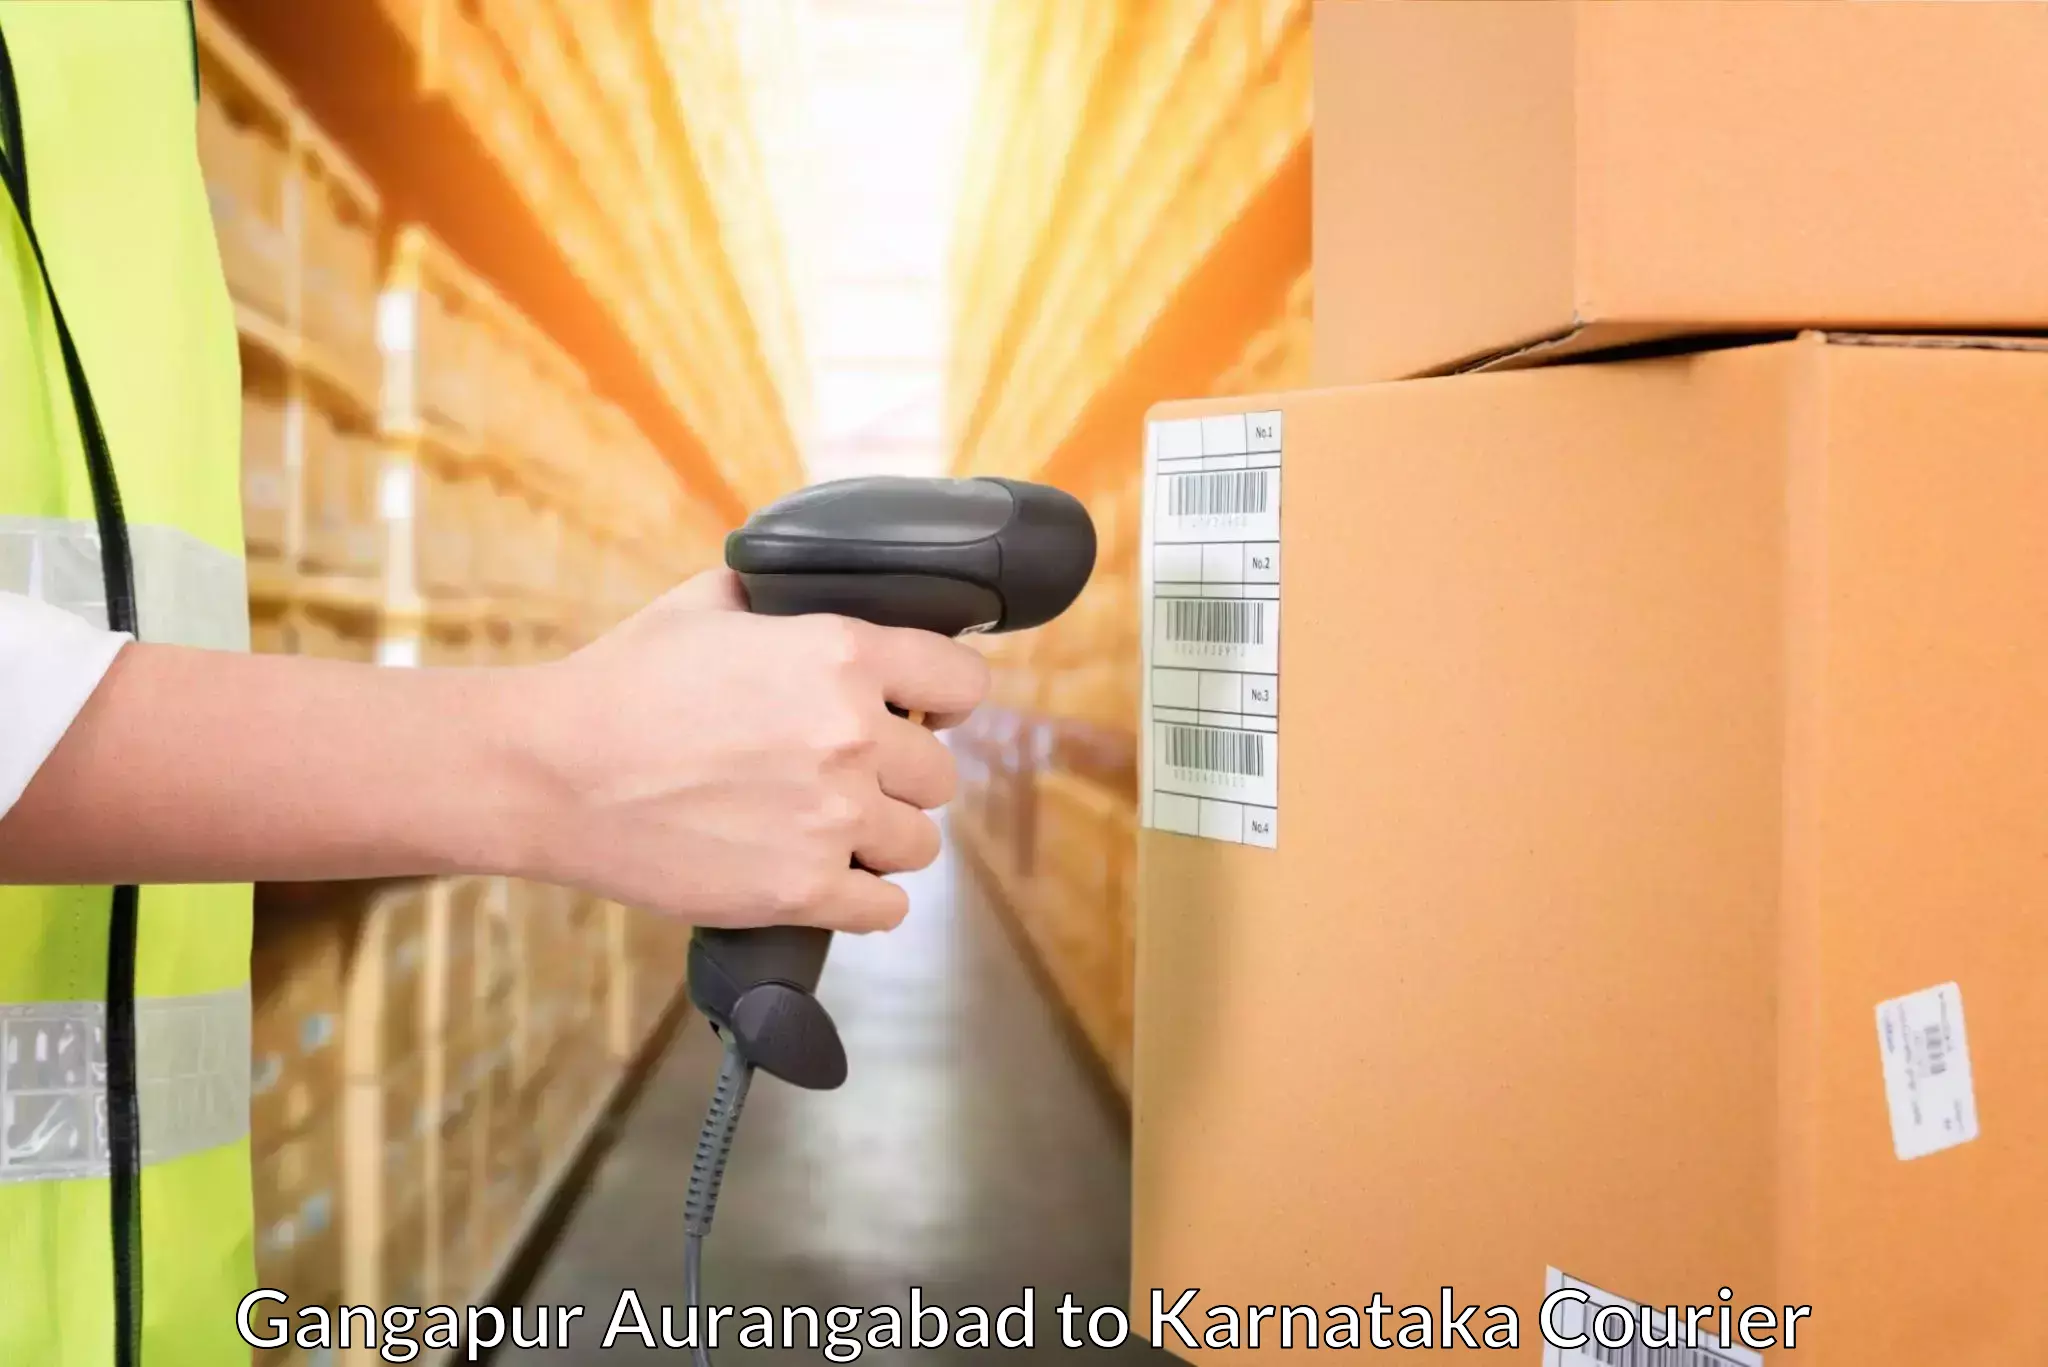 Modern delivery methods Gangapur Aurangabad to Hoovina Hadagali